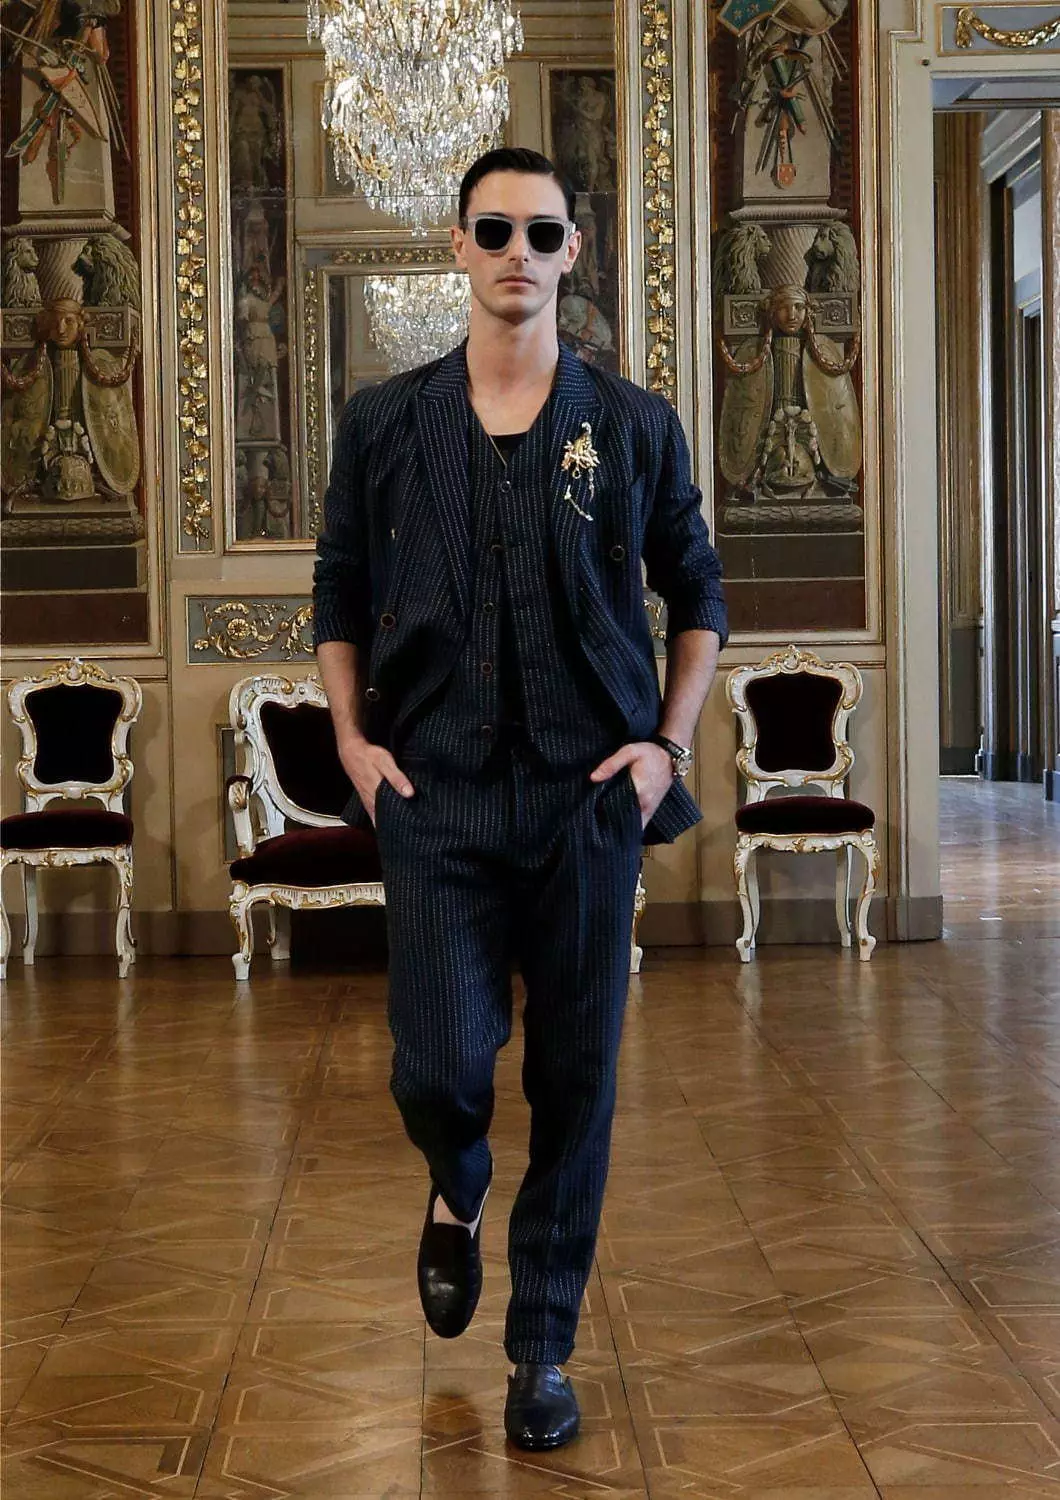 Colección Dolce & Gabbana Alta Sartoria Menswear Xullo 2020 53602_17